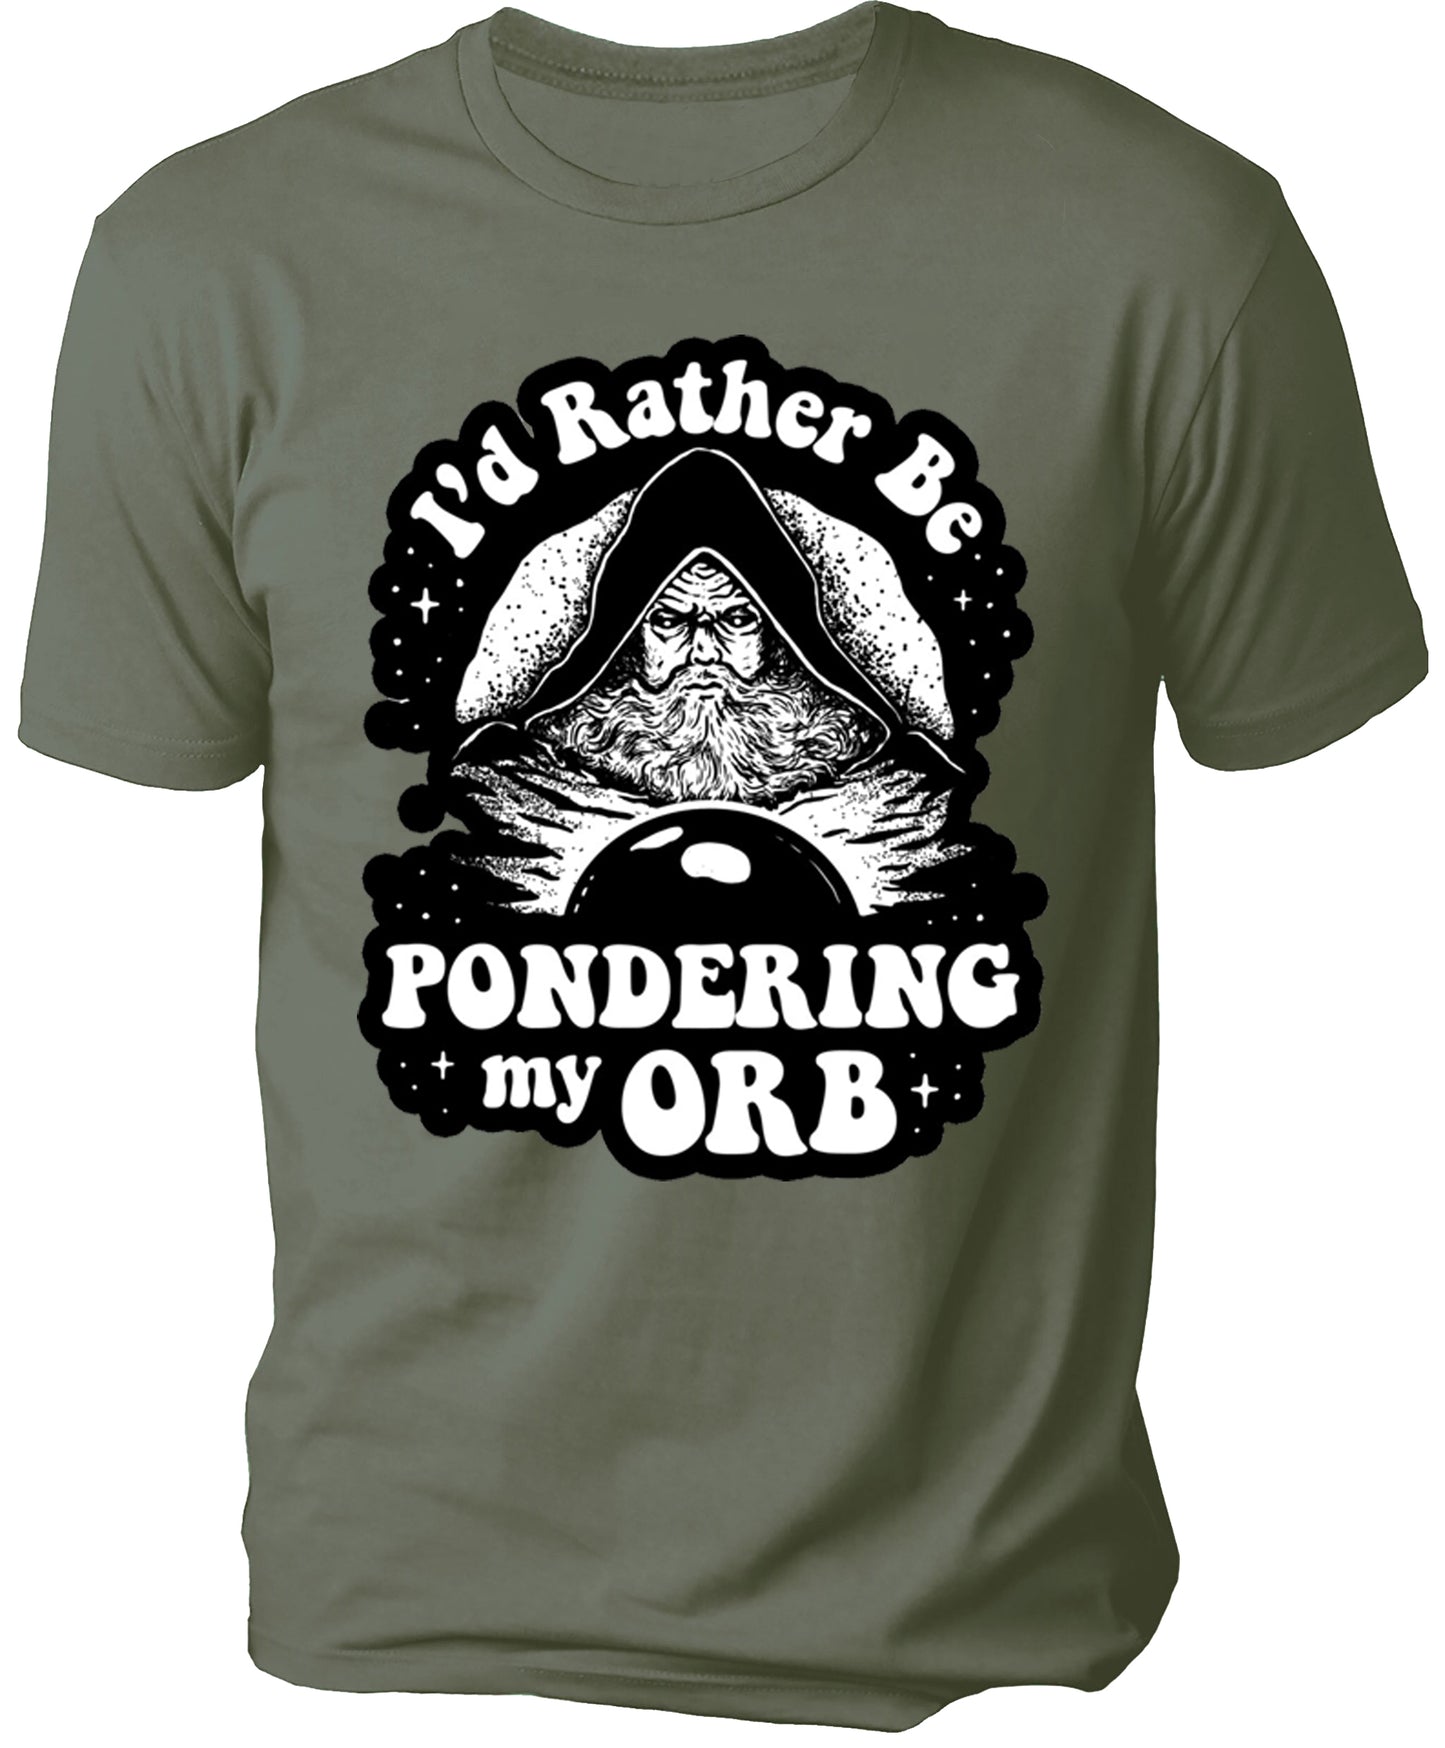 I'D Rather Be Men's T-shirt